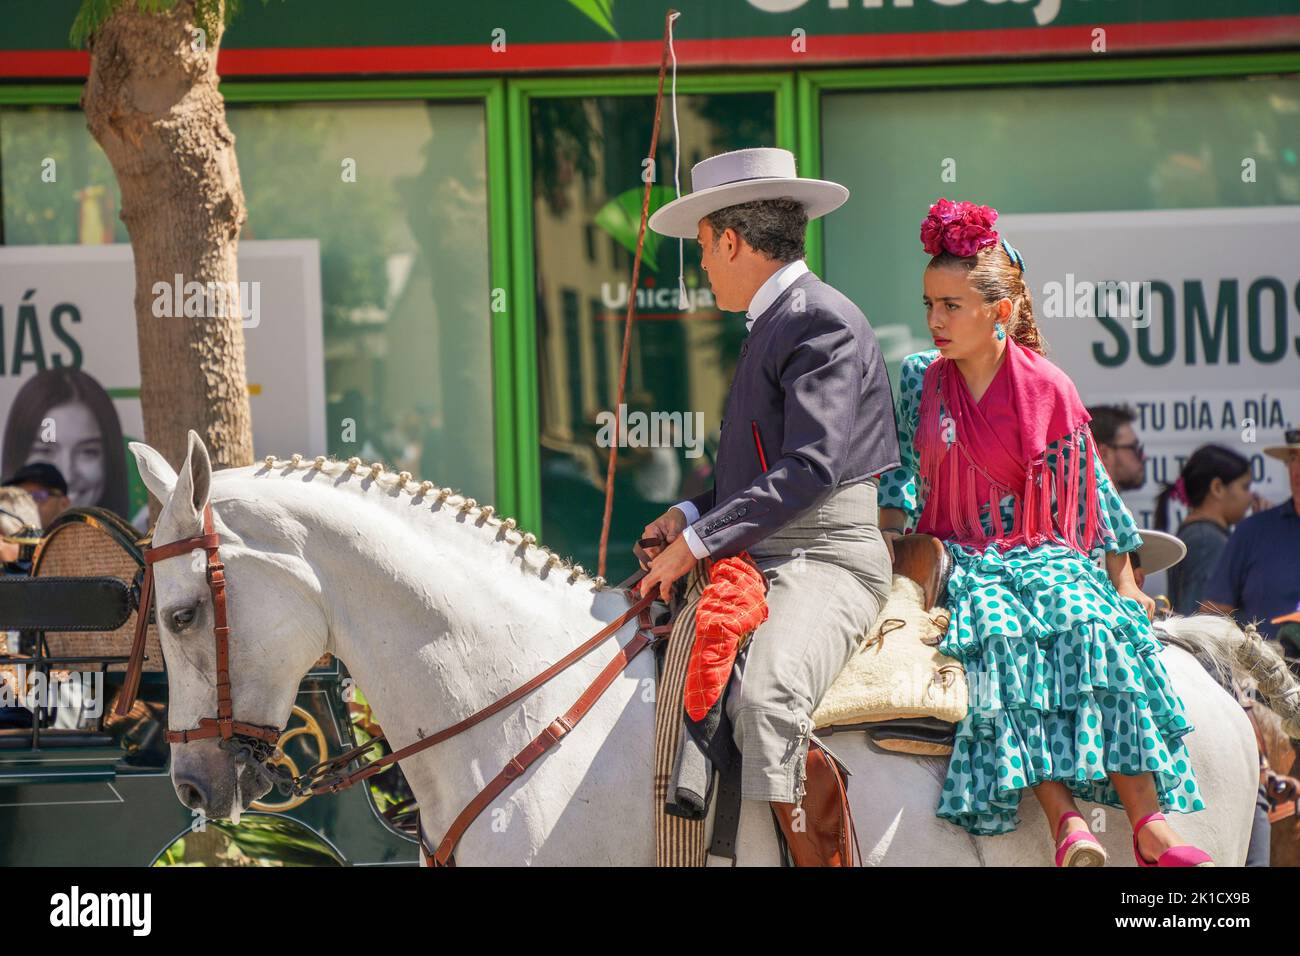 Couple espagnol en tenue traditionnelle à cheval, pendant la journée annuelle à cheval. Fuengirola, Andalousie, Costa del sol, Espagne. Banque D'Images